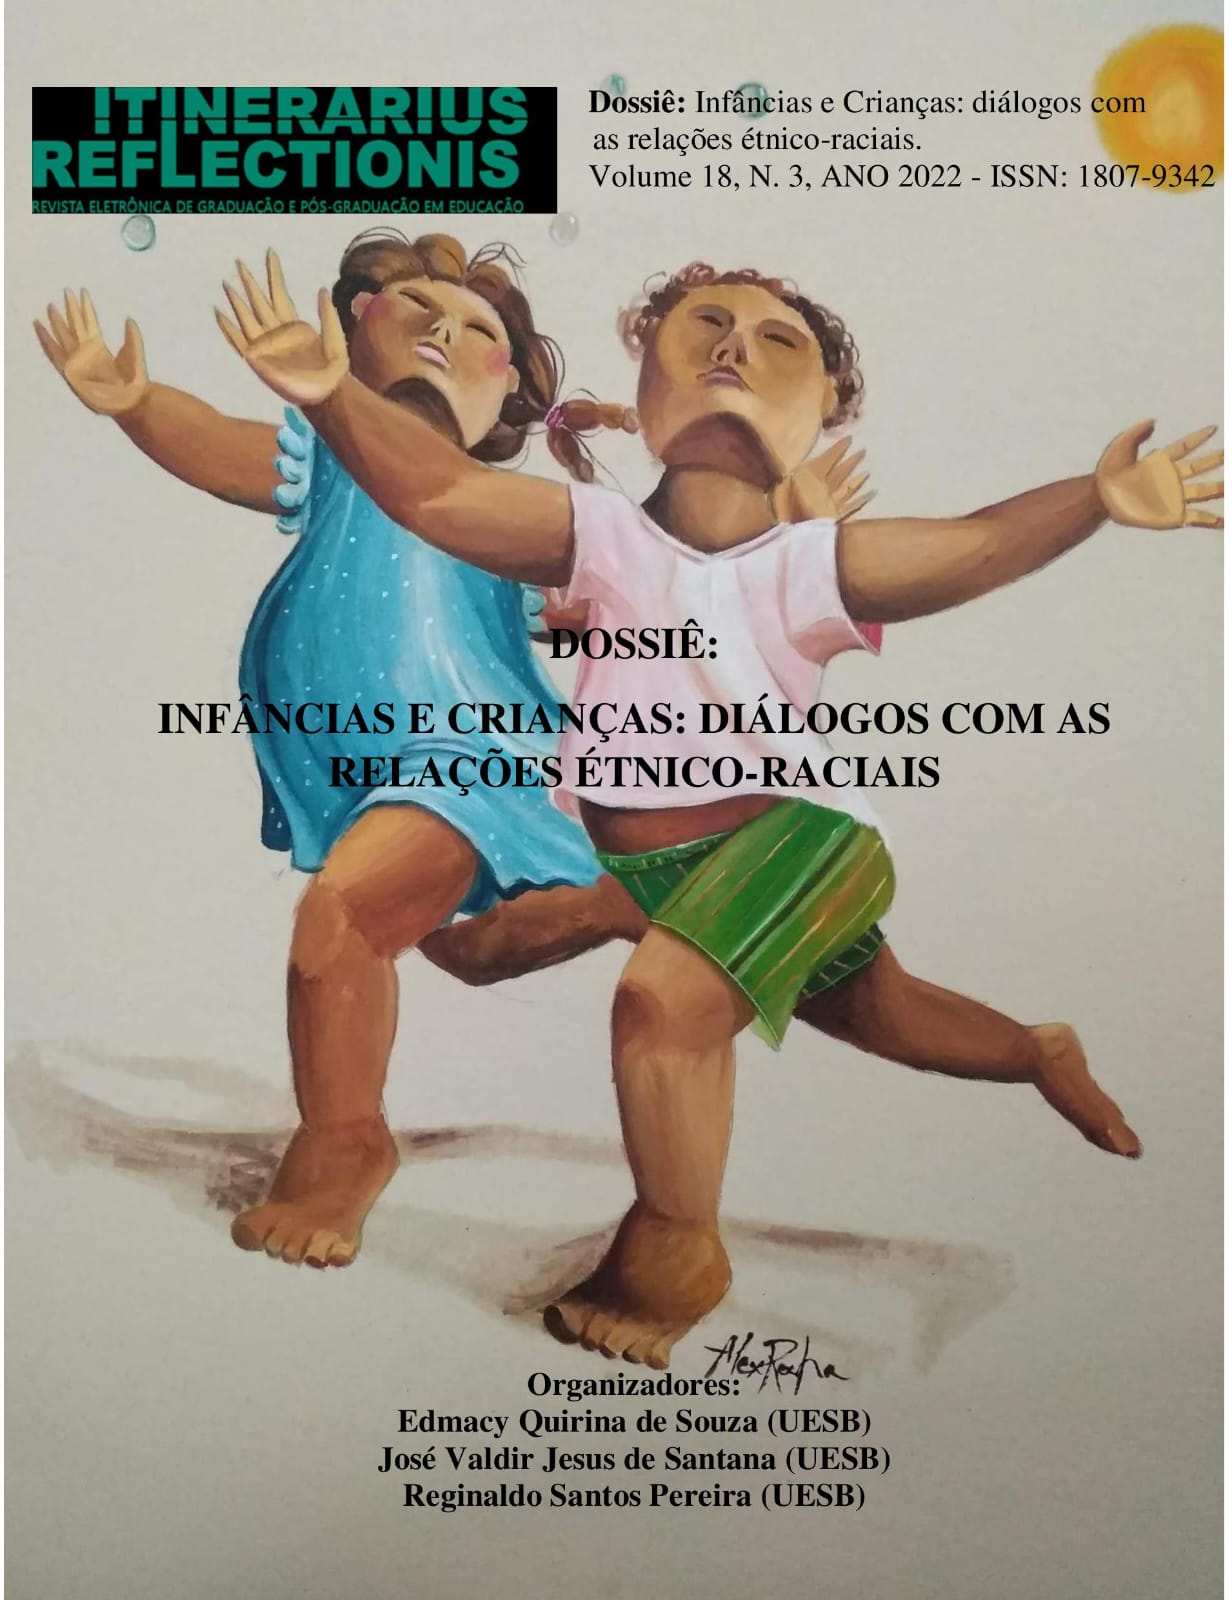 					View Vol. 18 No. 3 (2022): Dossiê Infâncias e Crianças - Diálogos com as Relações Étnicos-Raciais
				